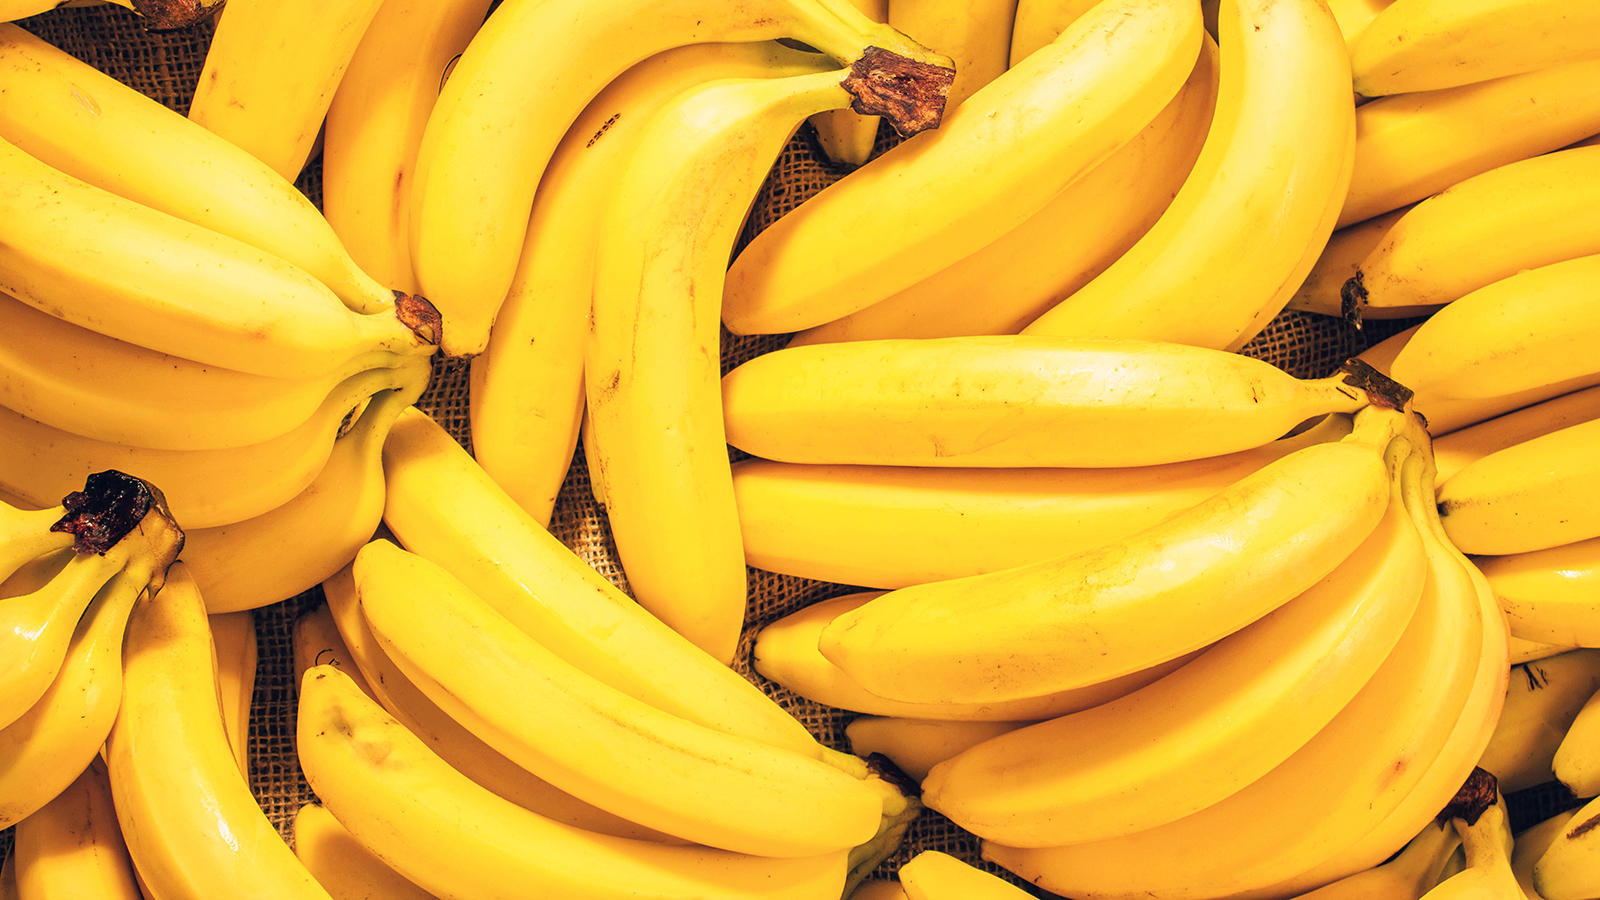 do not refrigerate - many banana - seles